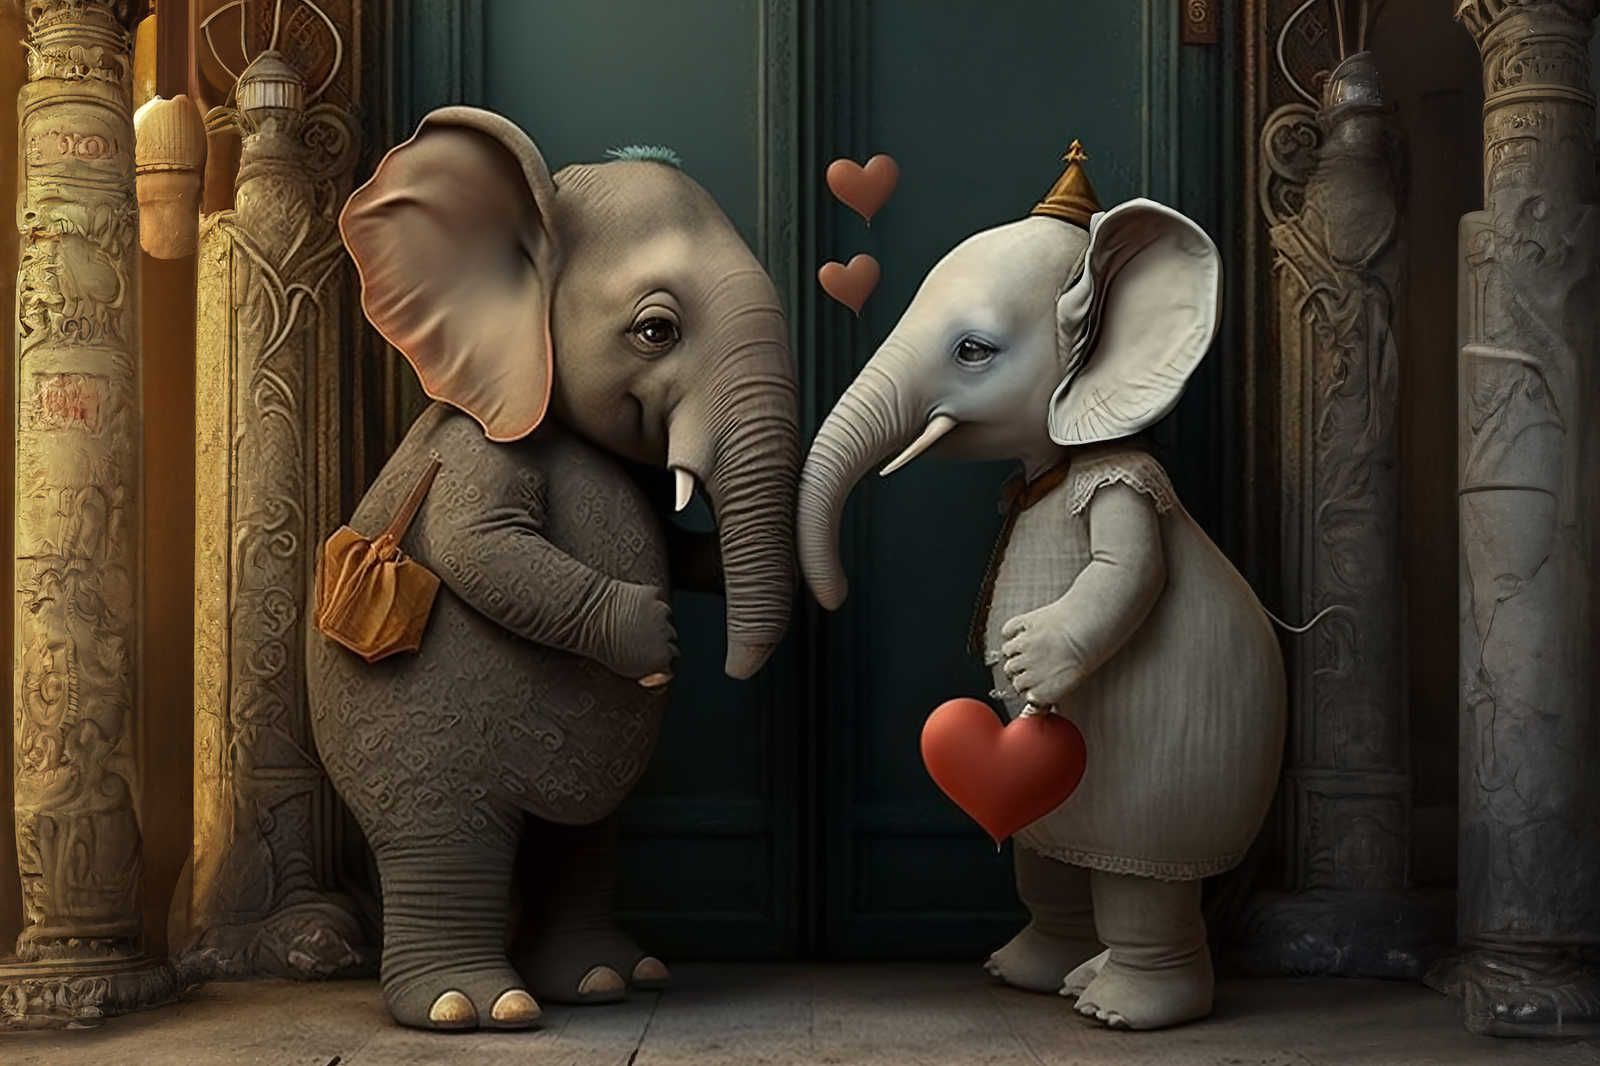             KI canvas picture »elephant love« - 90 cm x 60 cm
        